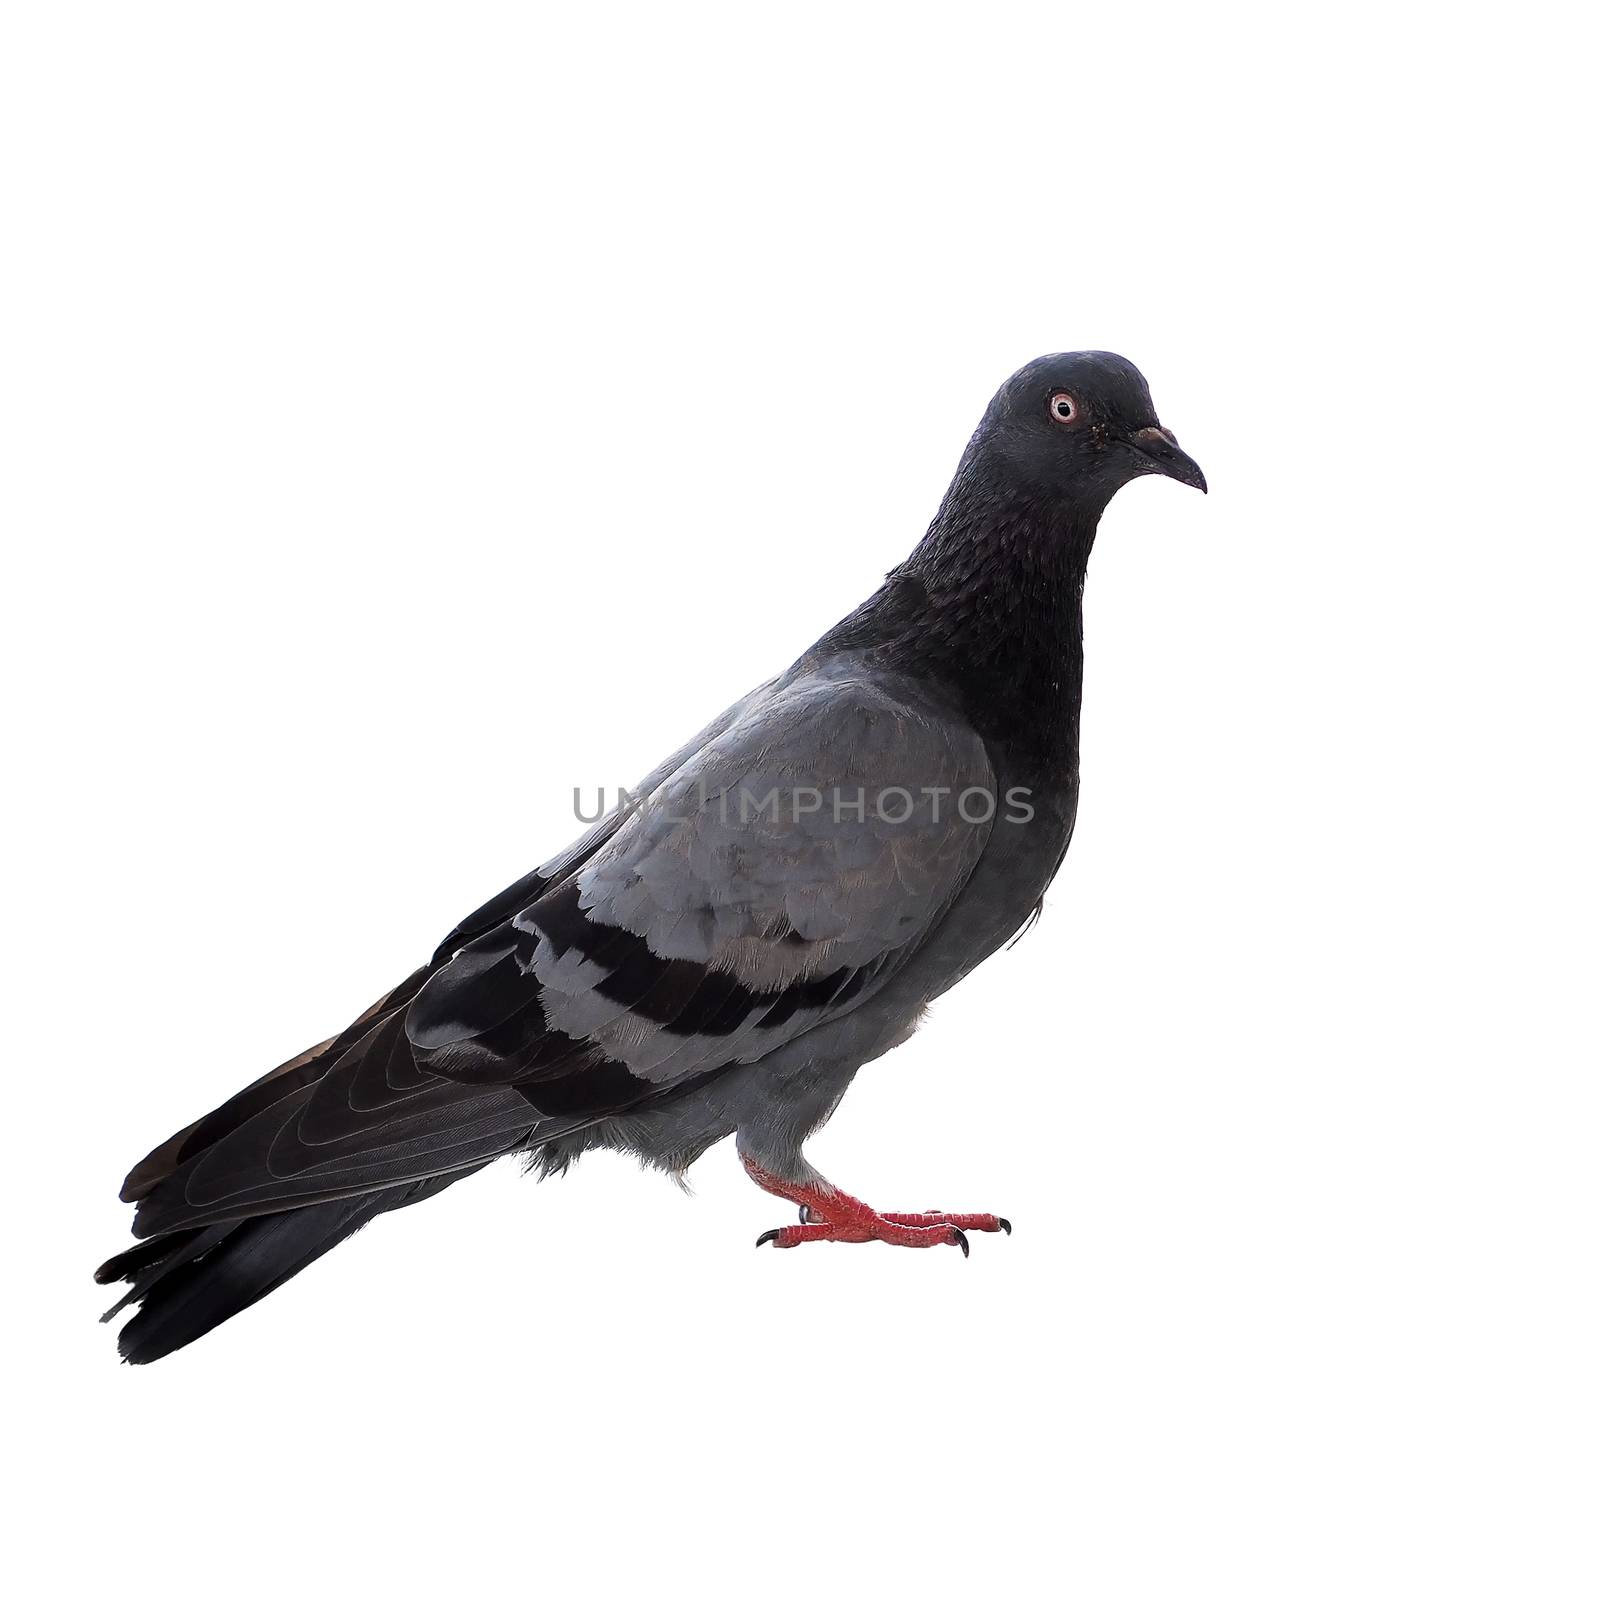 pigeon bird by leisuretime70